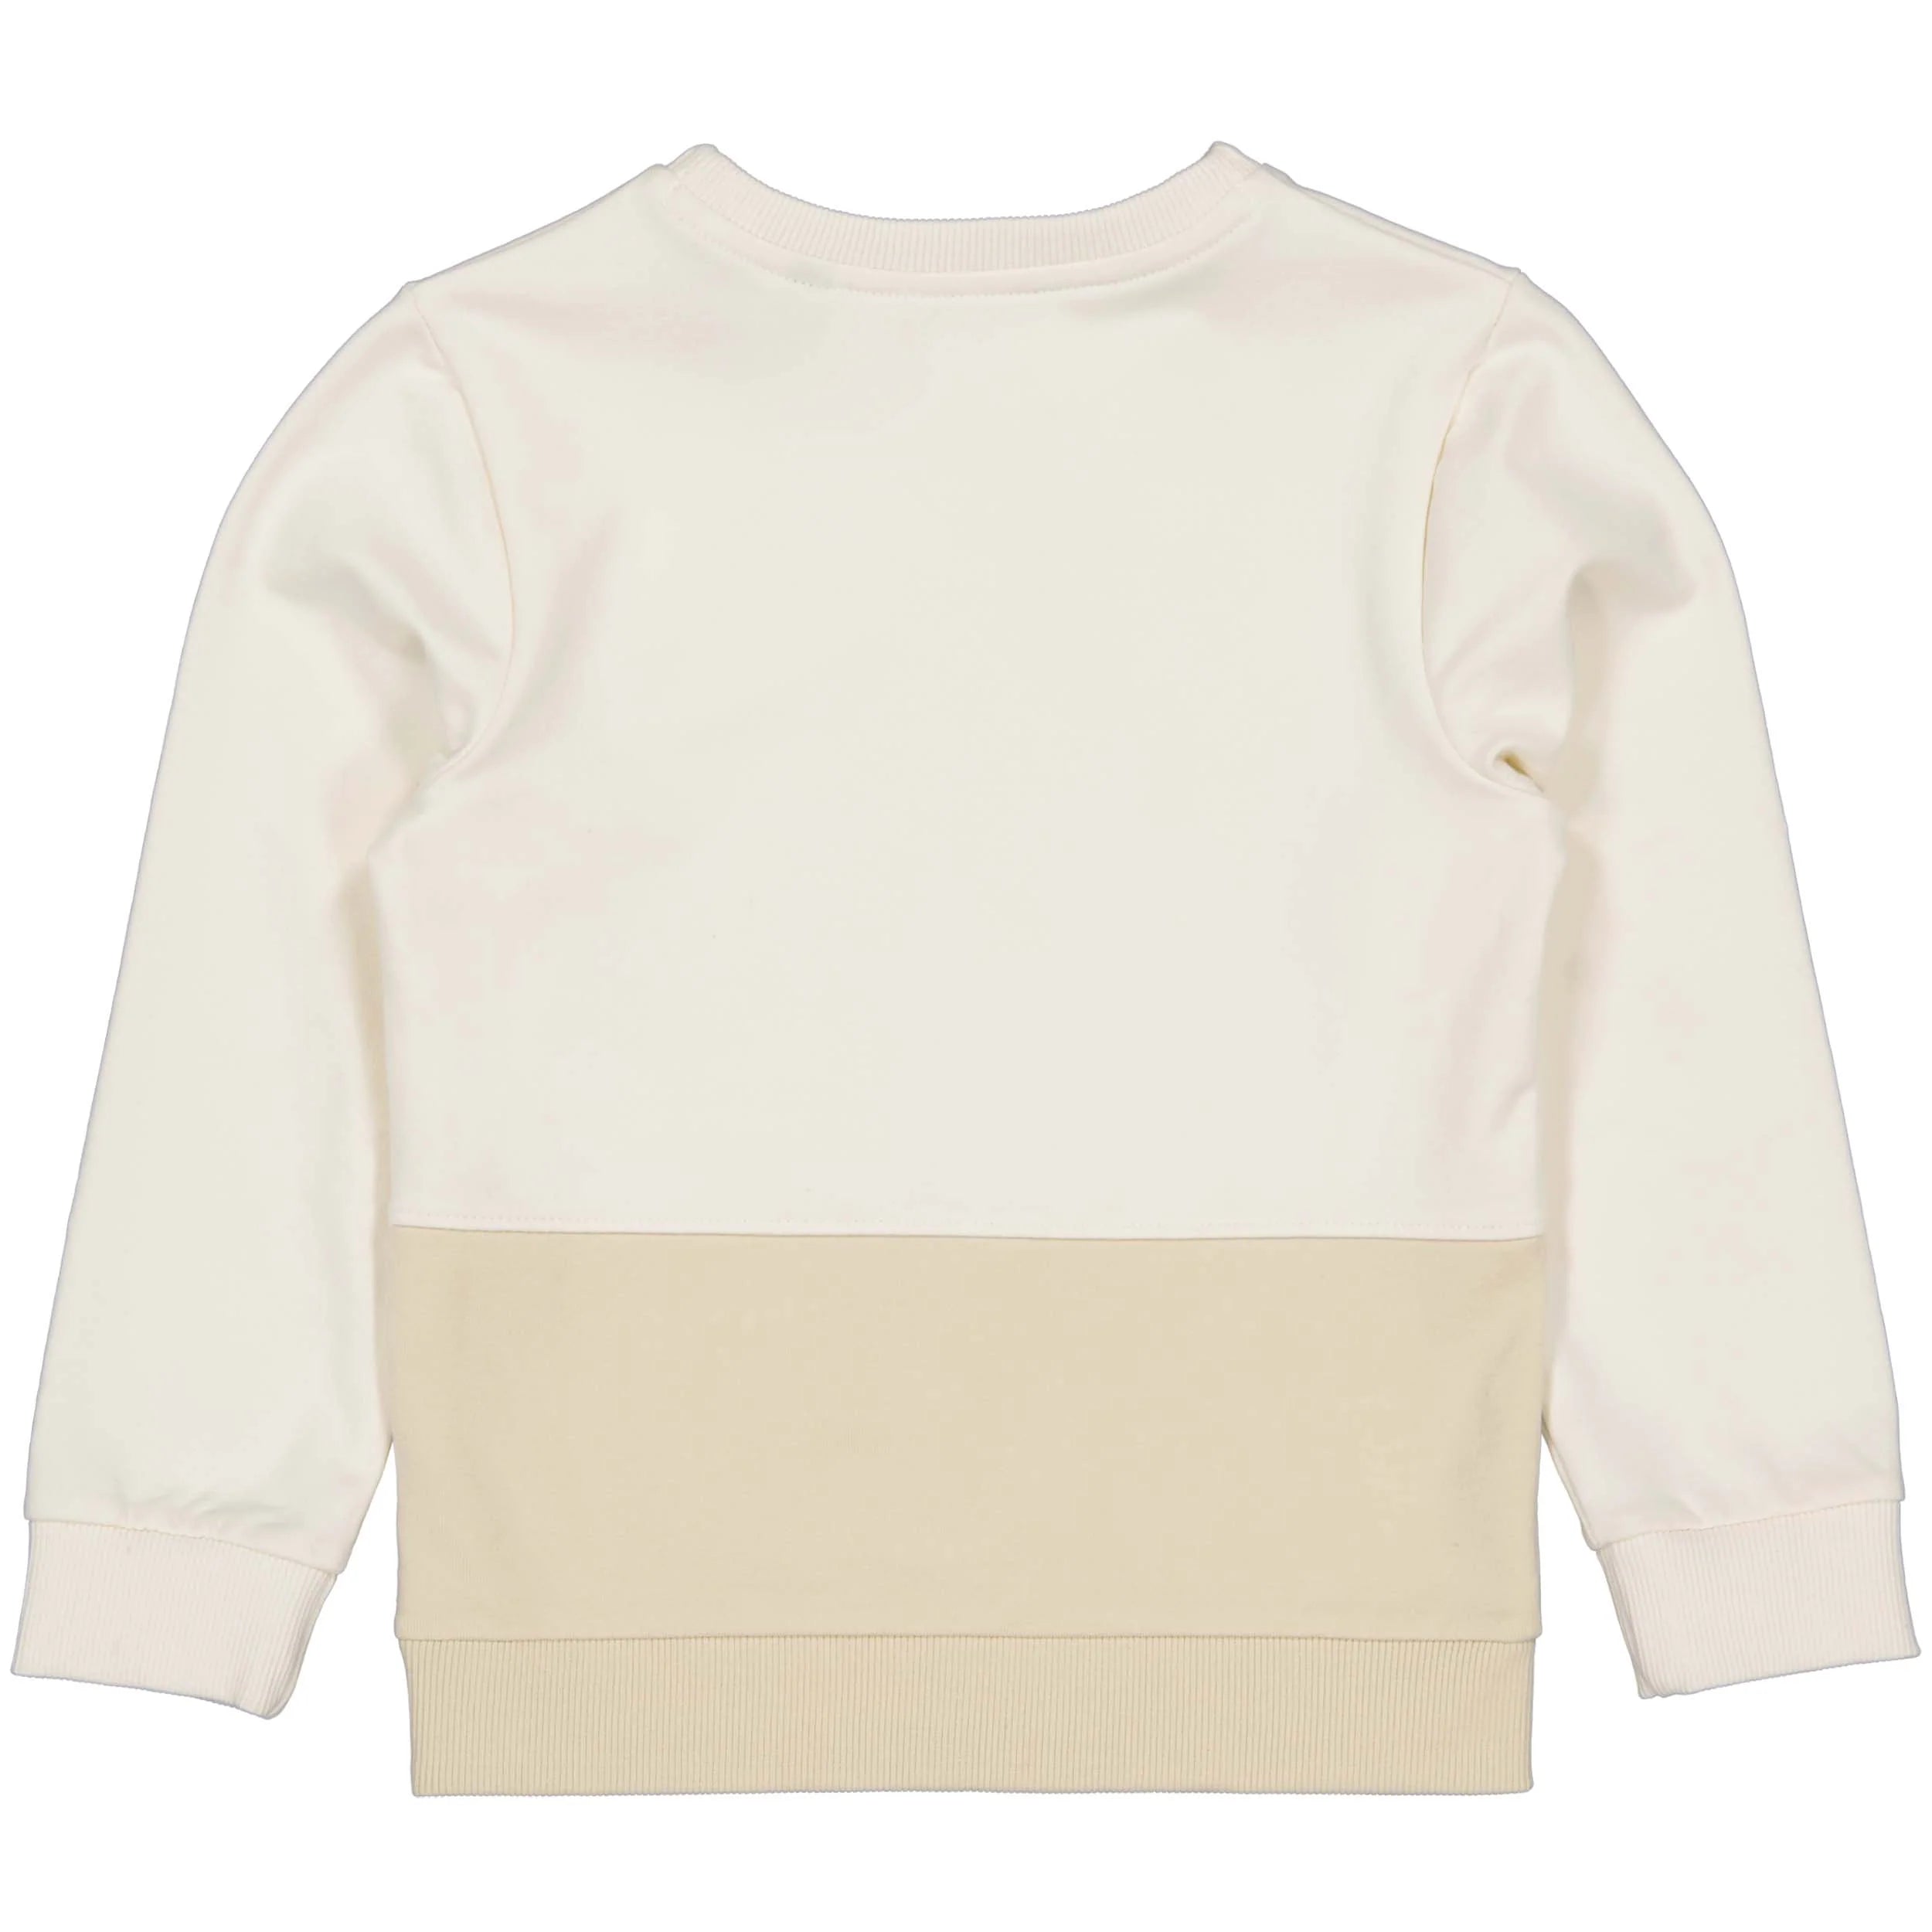 Jongens Sweater LELROY van Levv in de kleur Off White in maat 128.